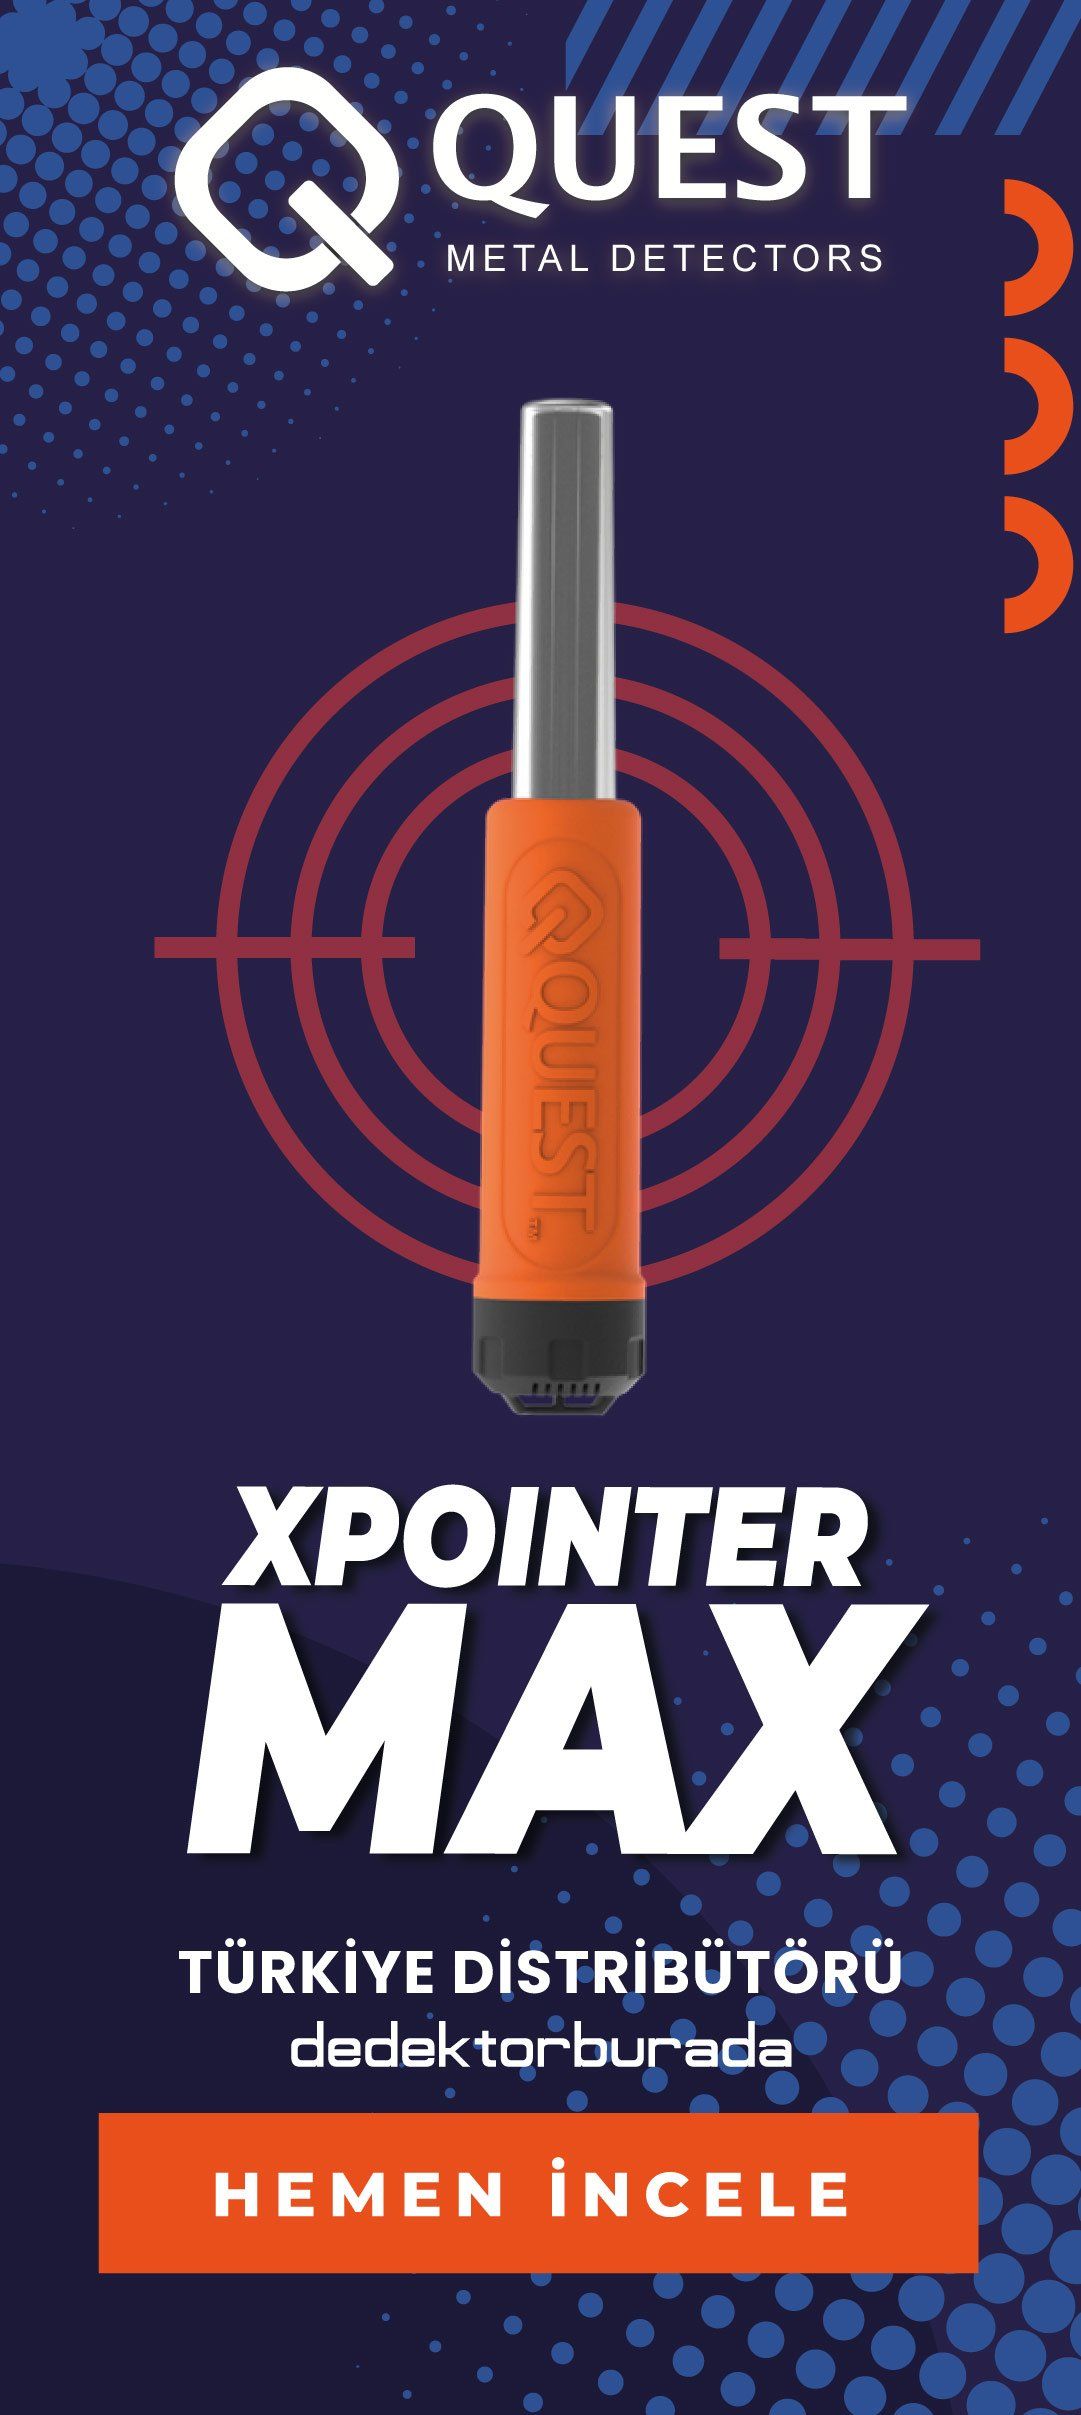 XPOINTER MAX